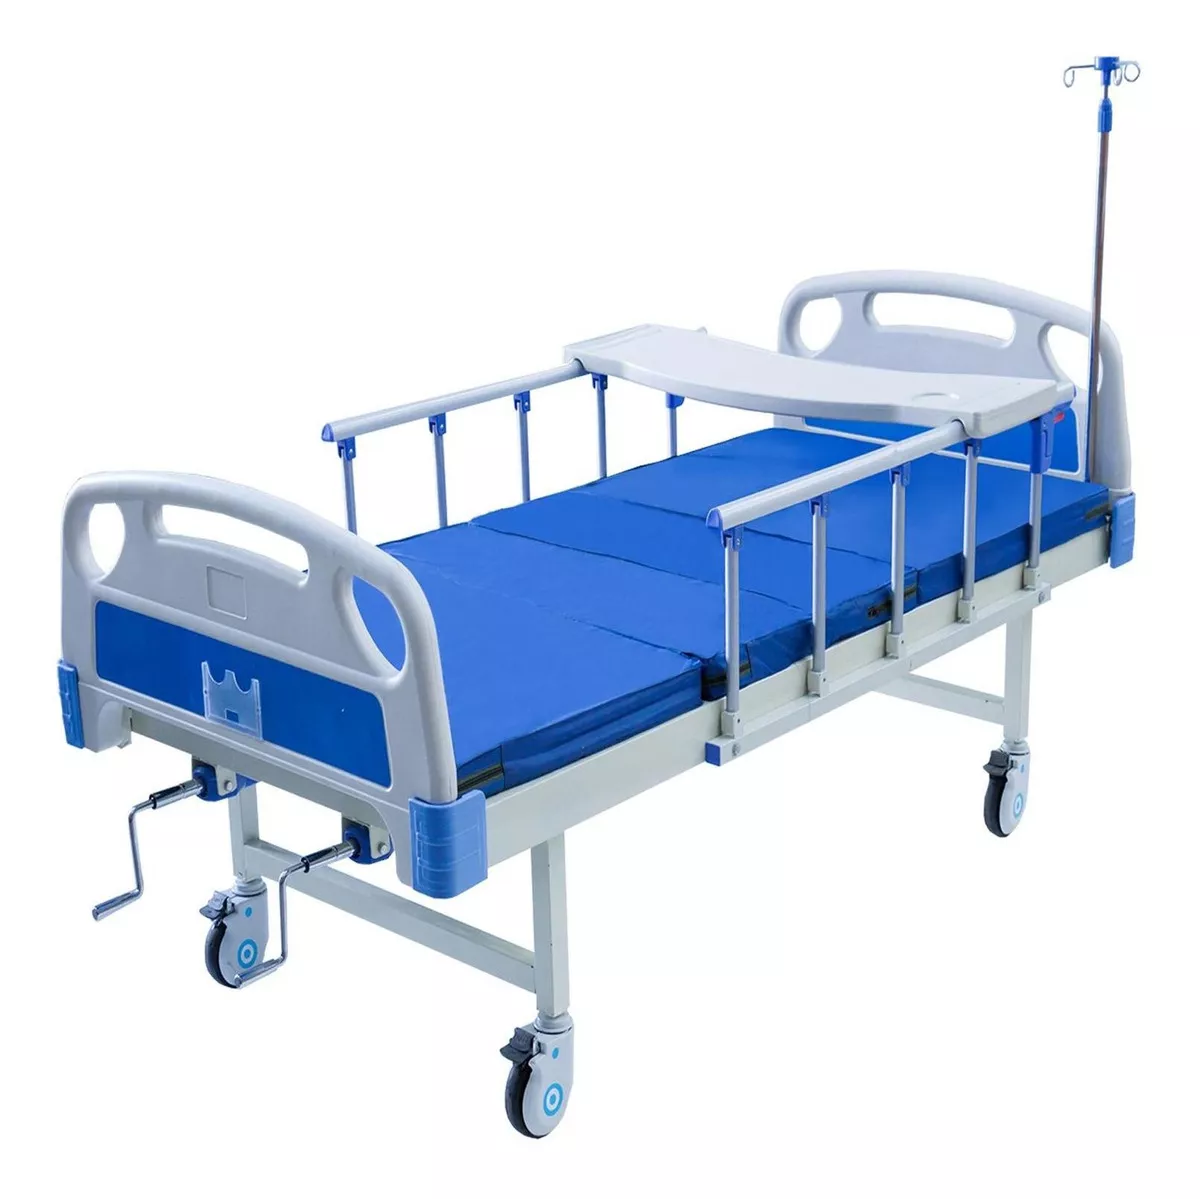 Tercera imagen para búsqueda de cama de hospital precio